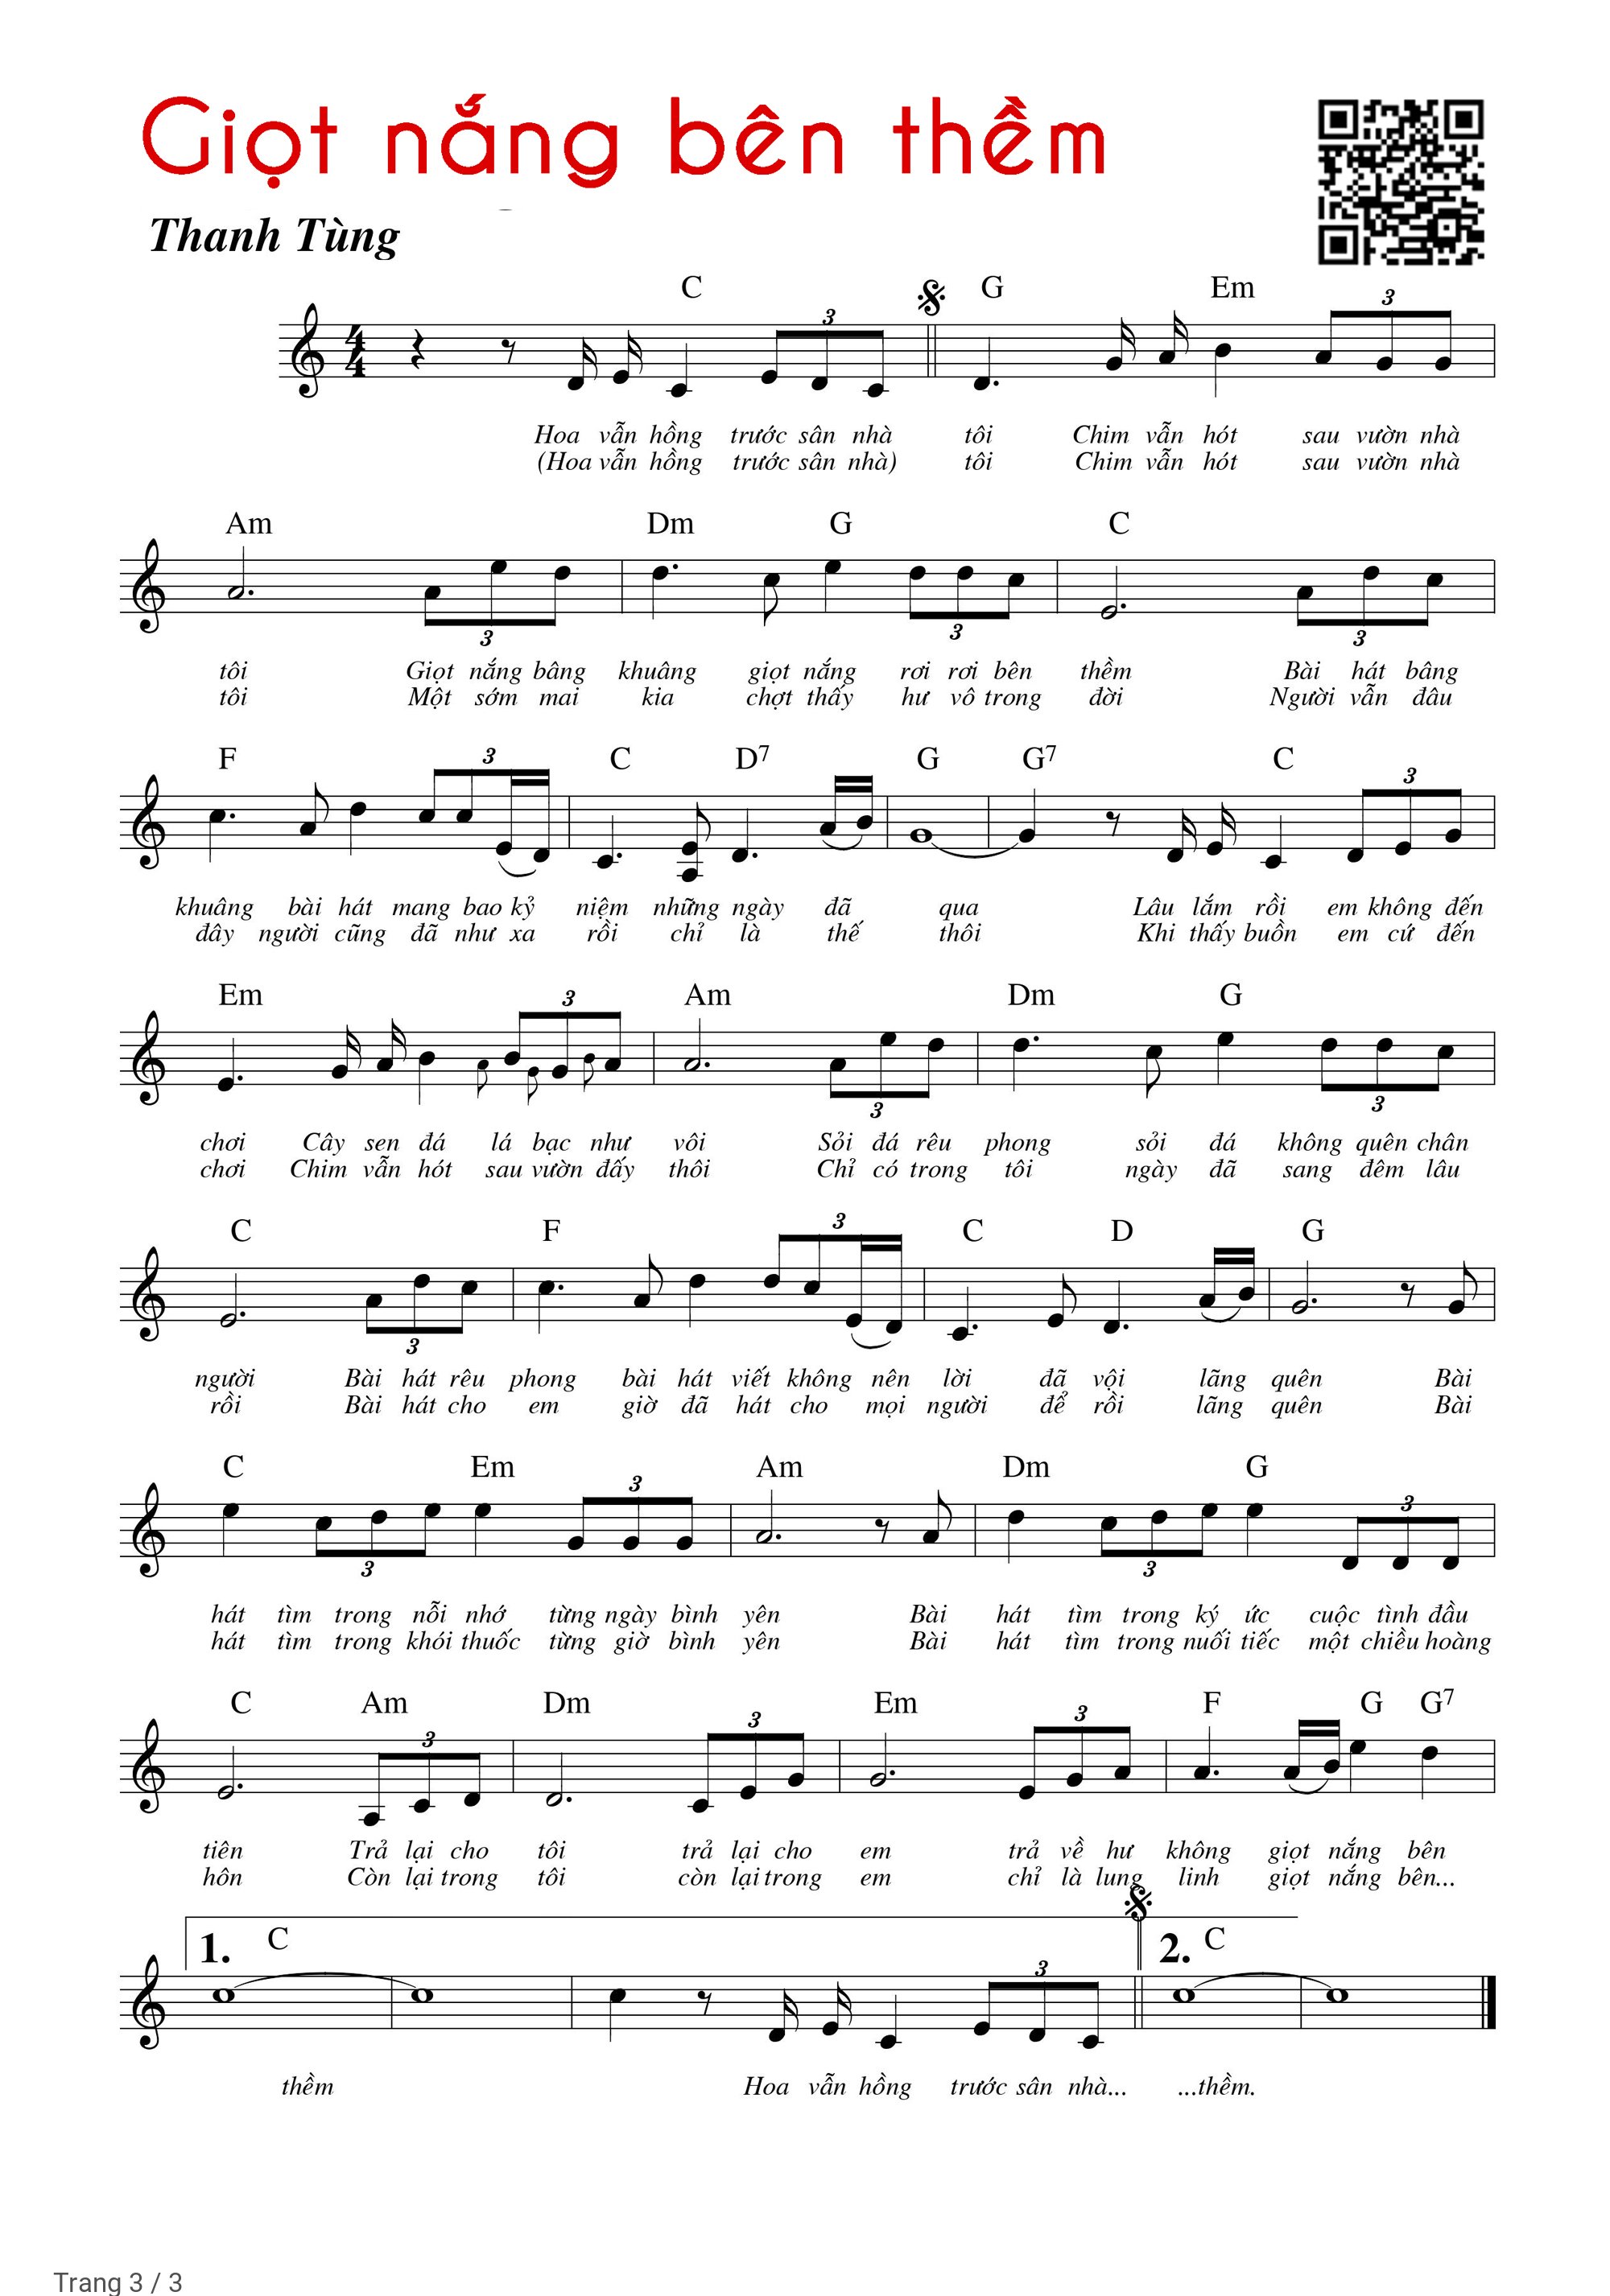 Trang 3 của Sheet nhạc PDF Piano bài hát Giọt nắng bên thềm - Thanh Tùng